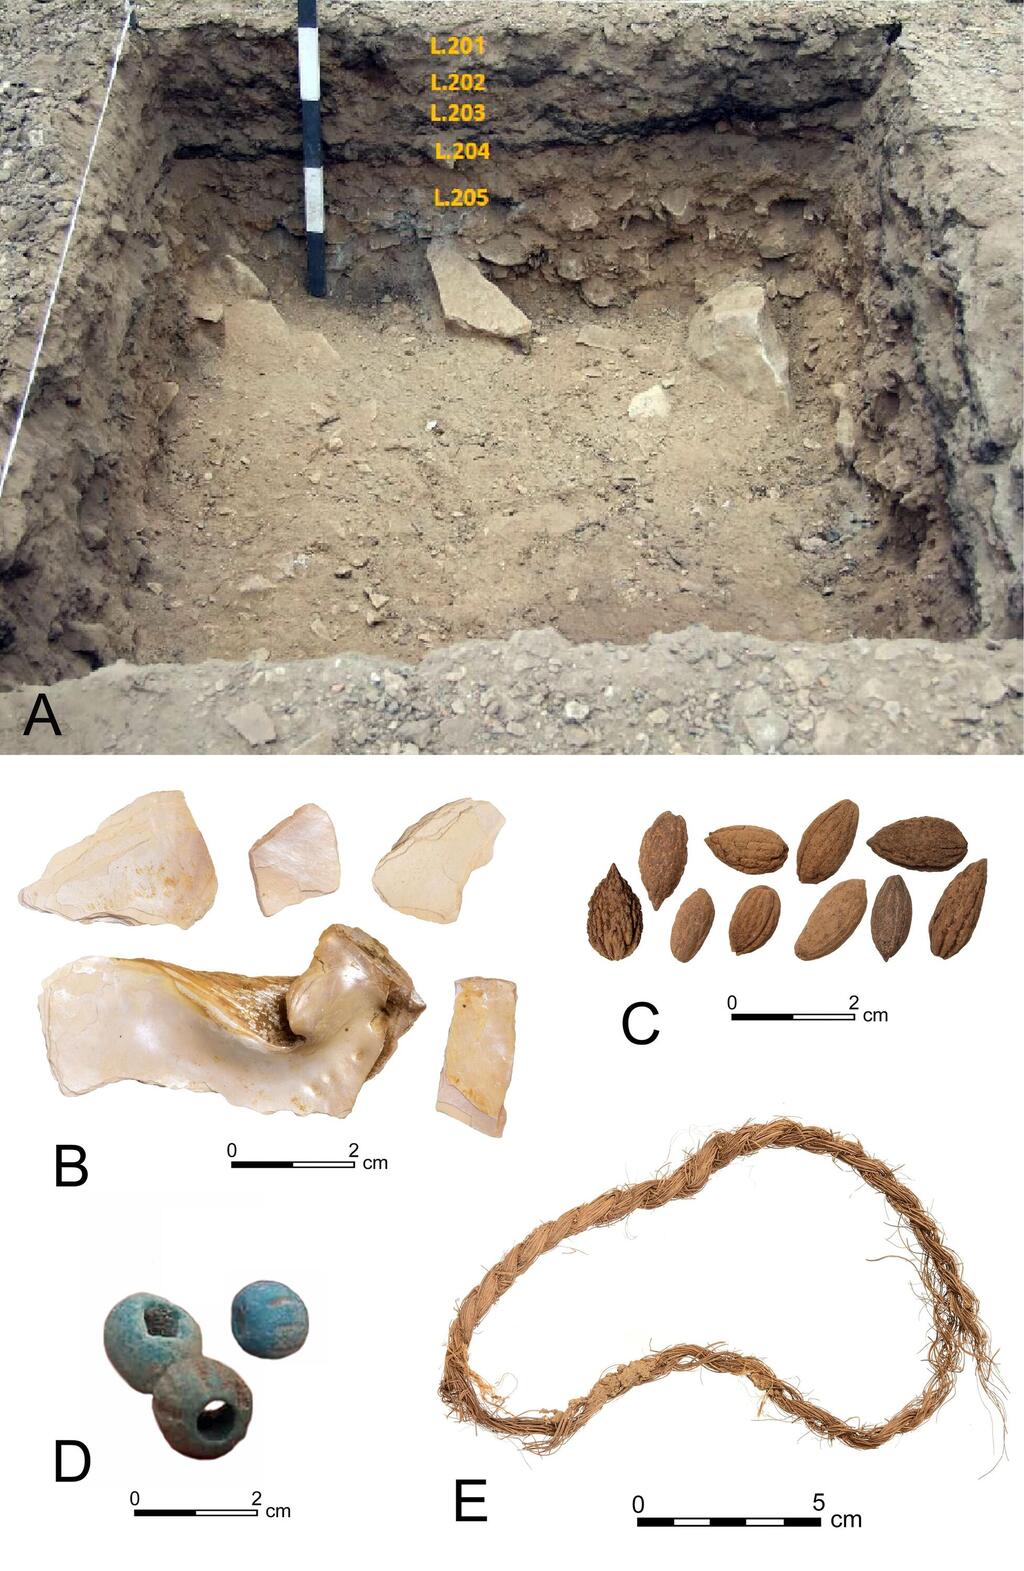 ממצאים מבור הבדיקה בשער רמון: חרצני זיתים,צדפה מן הנילוס 